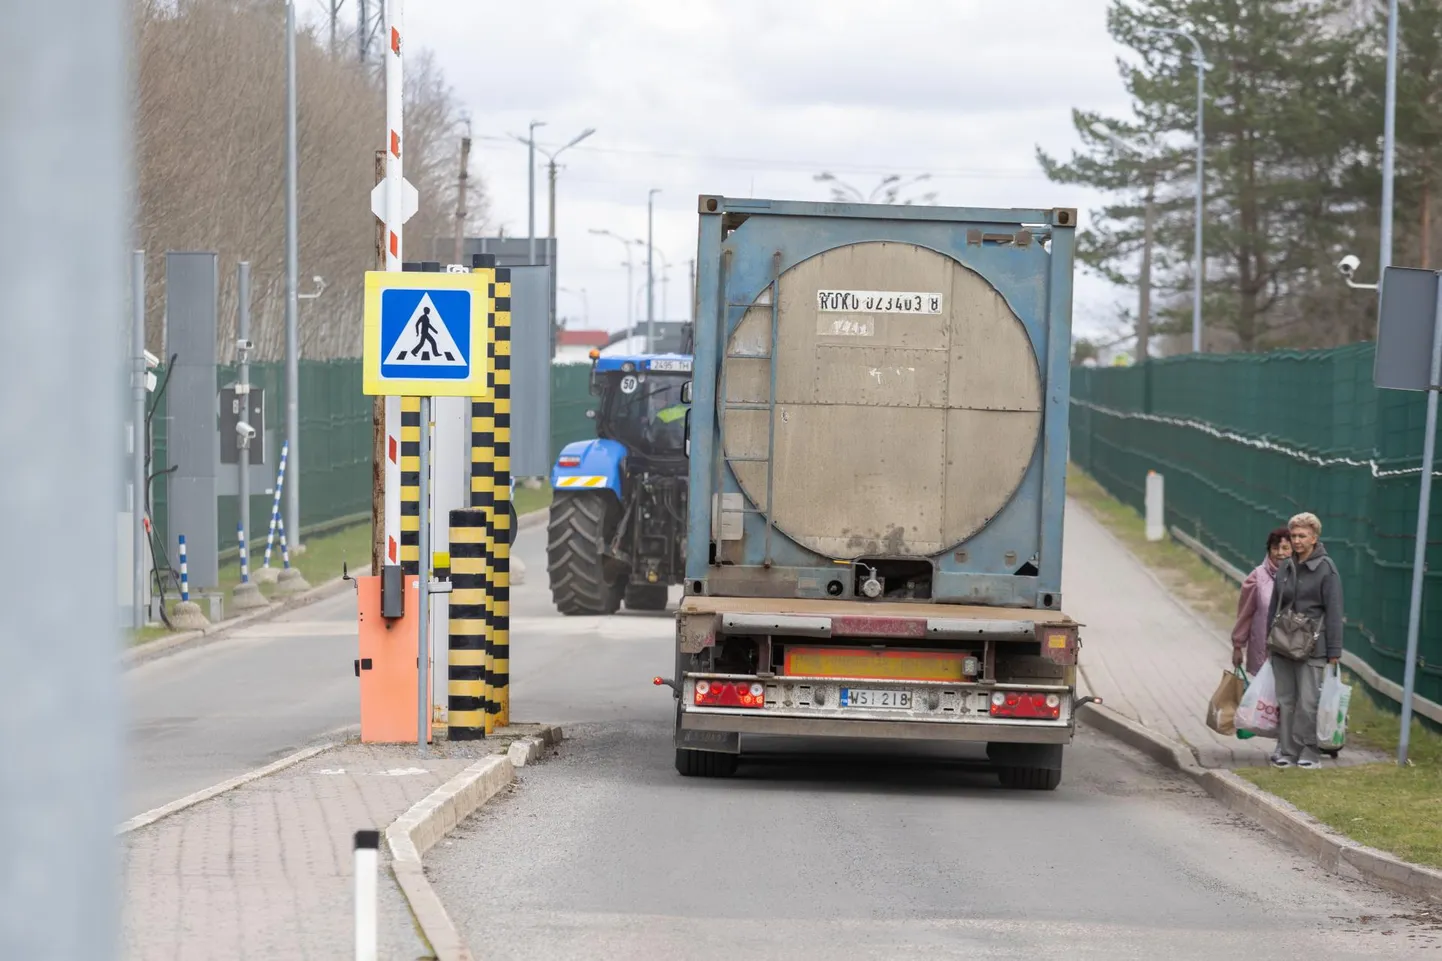 Soome numbrimärgiga veok on saanud rohelise tule, et liikuda kitsal, kõrge traataiaga piiratud teel Luhamaa piiripunktist Venemaa poole. Kõnniteel astuvad Eestisse kaks jalgsi Venemaalt tulijat.